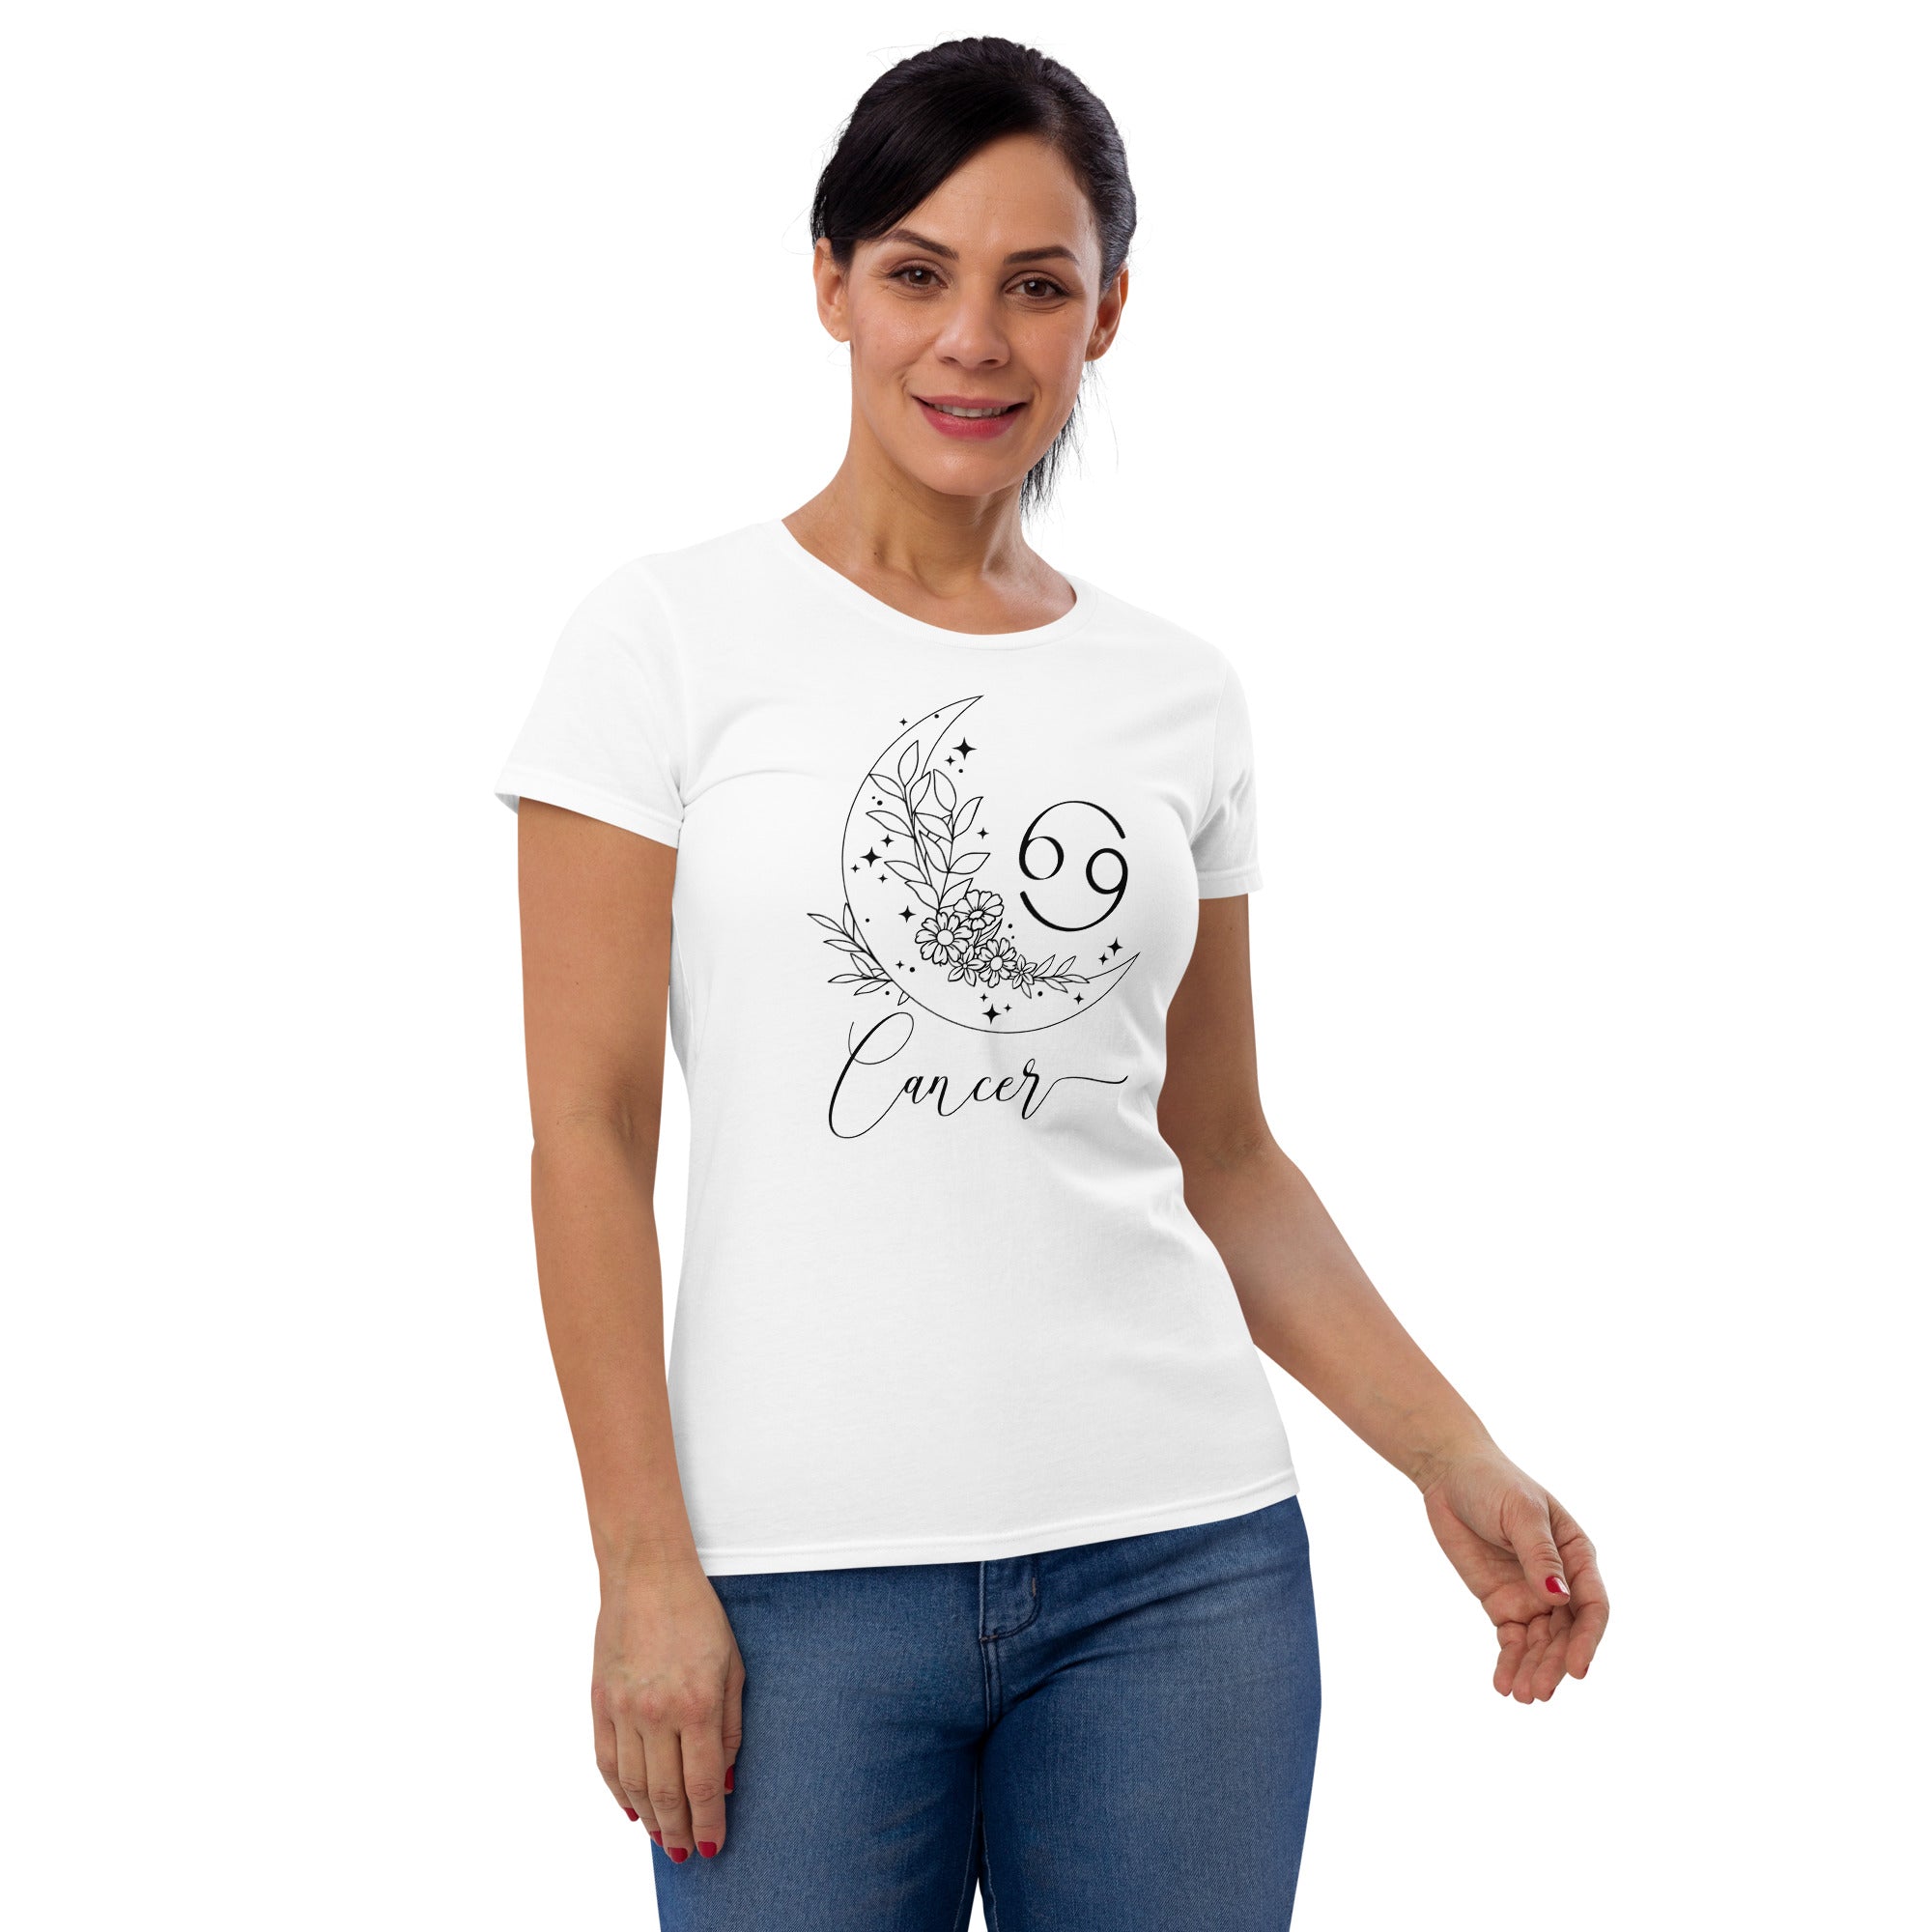 Zodiac Collection - Cancer - Women's short sleeve t-shirt